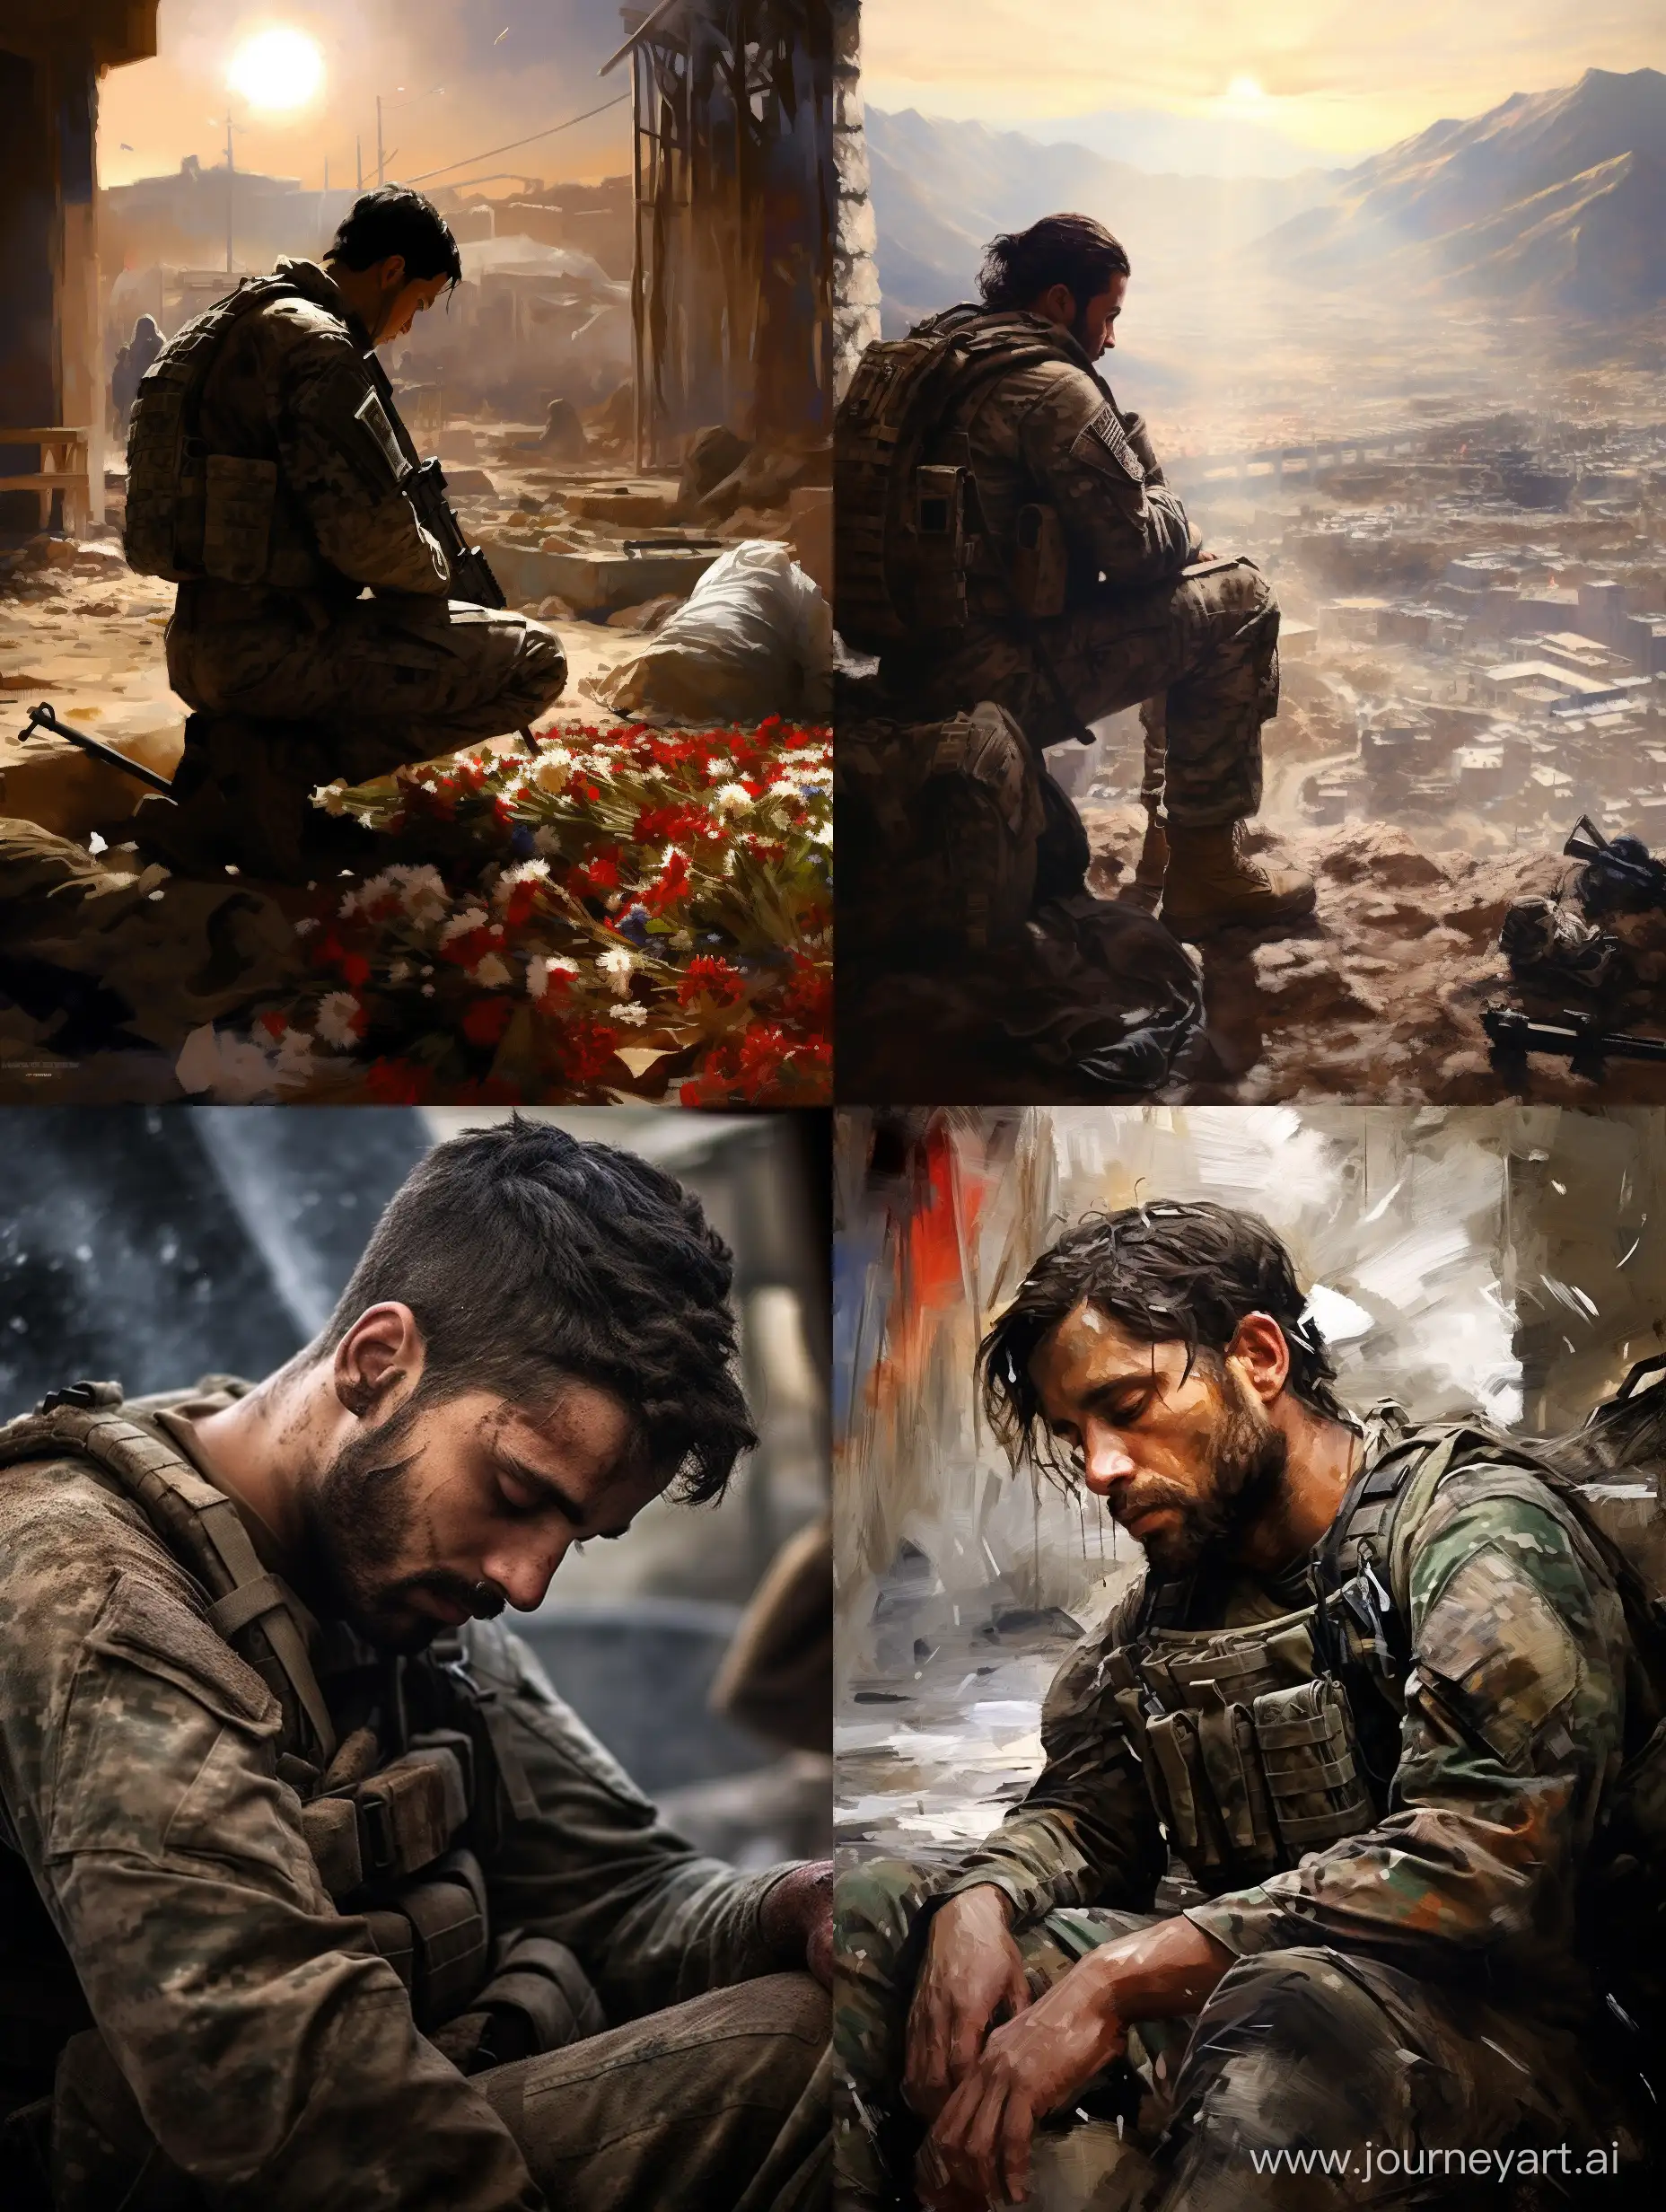 до свидания, Афган,этот призрачный мир не пристало добром вспоминать тебя вроде...но о чём то грустит боевой командир-мы уходим,уходим,уходим...